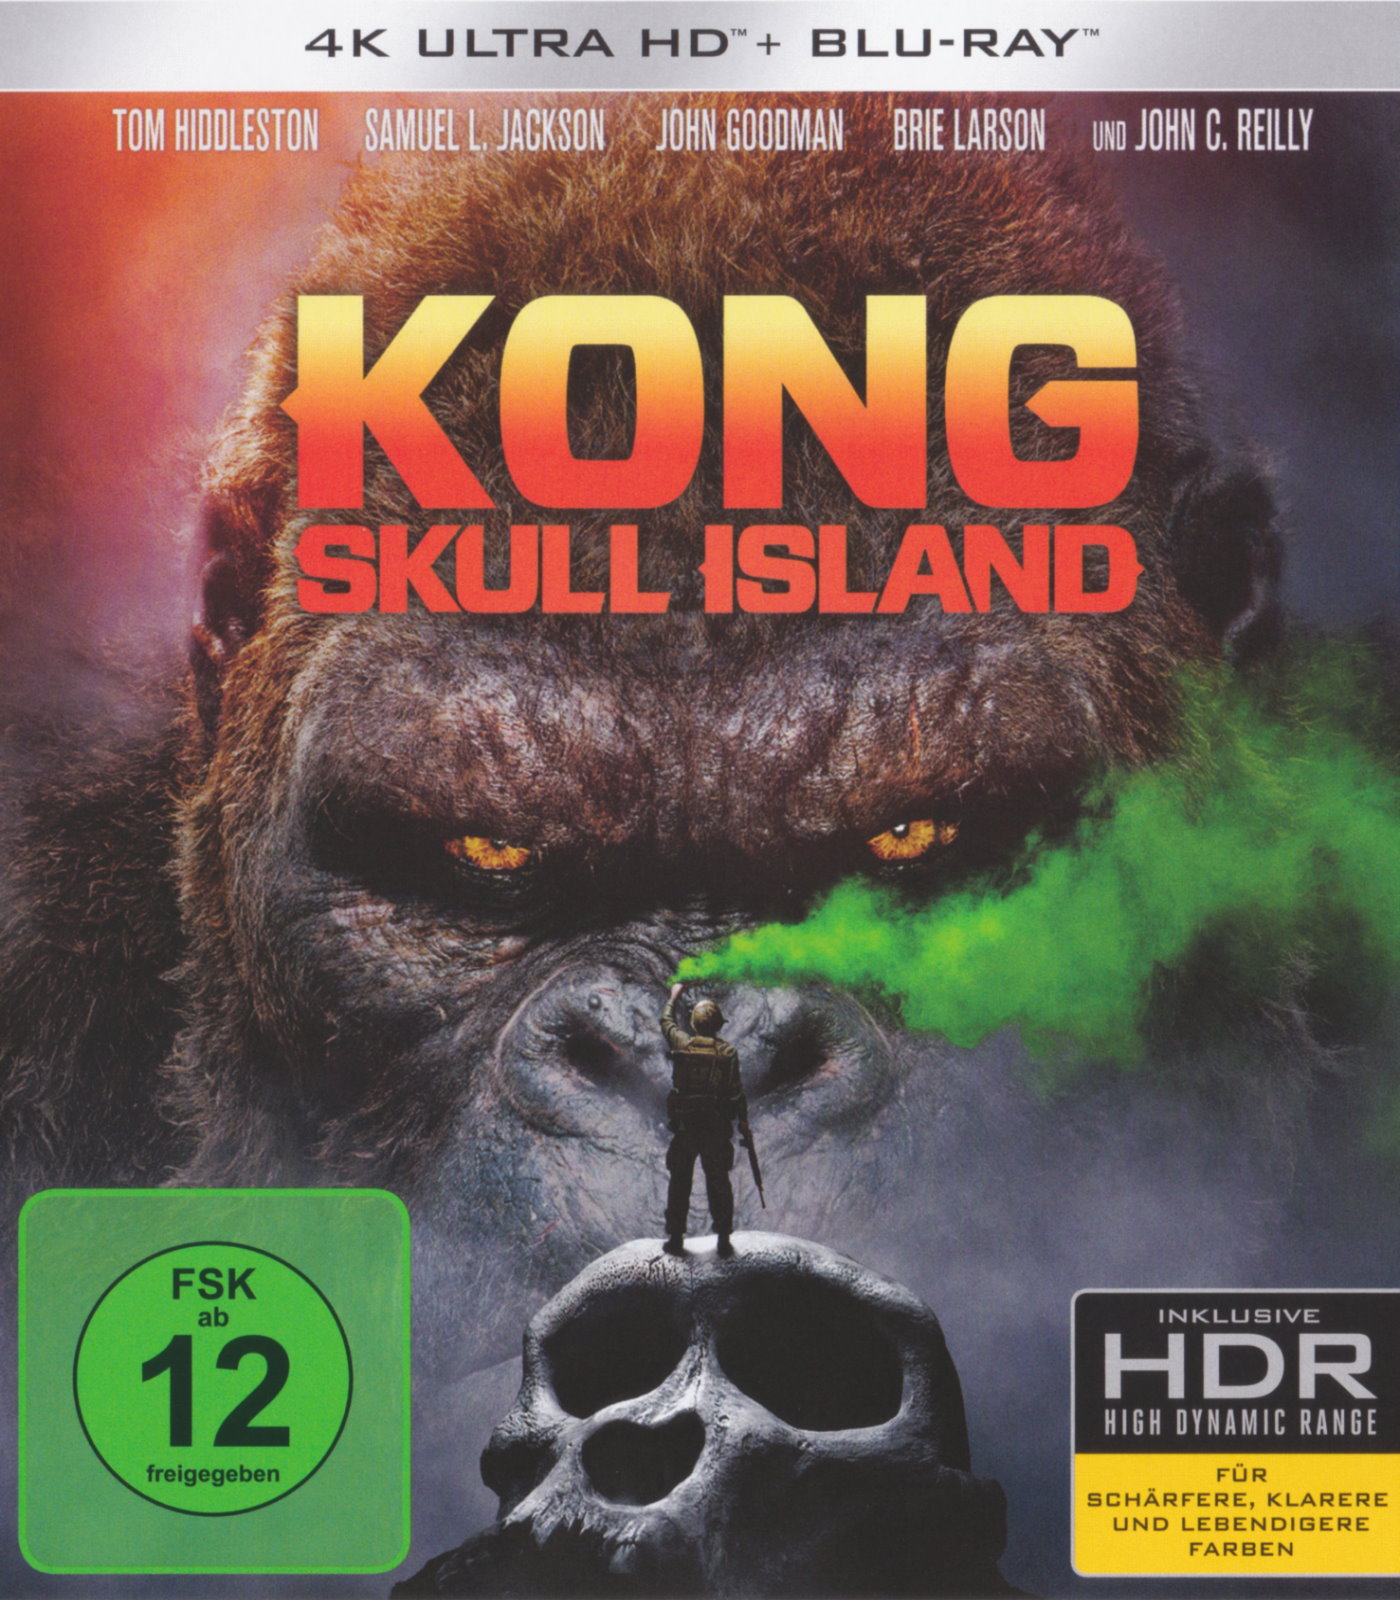 Cover - Kong - Skull Island.jpg